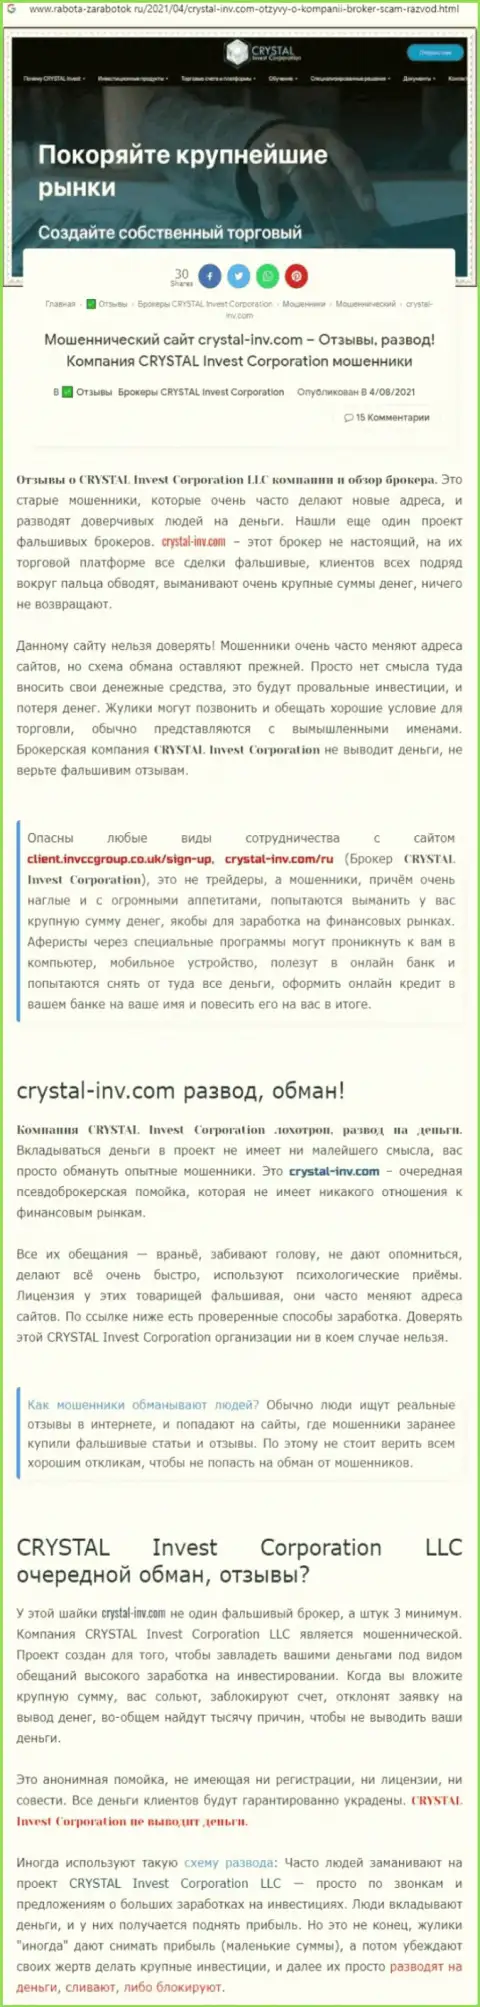 Материал, разоблачающий организацию Кристал-Инв Ком, позаимствованный с сайта с обзорами мошеннических деяний разных компаний